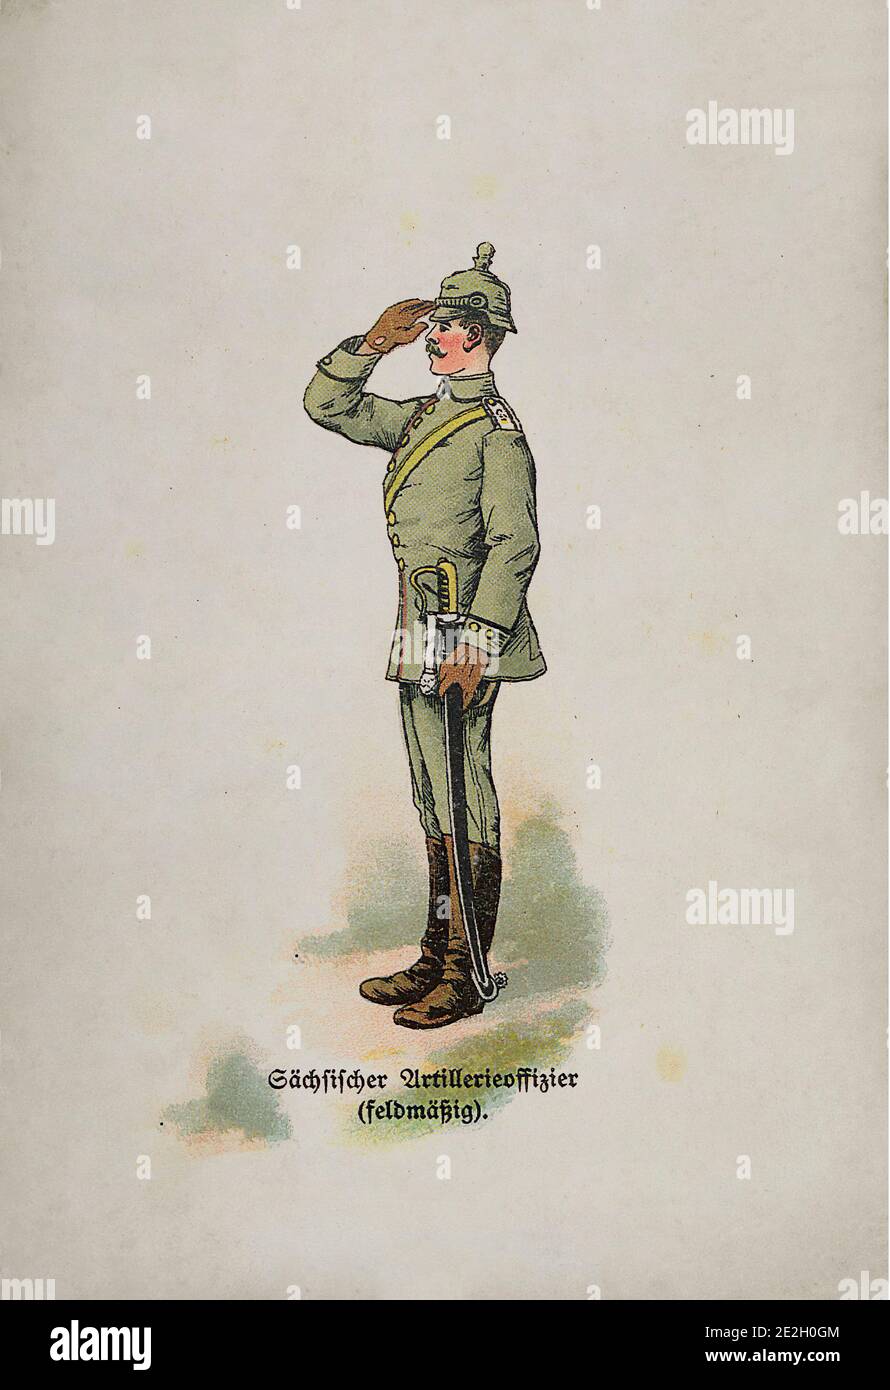 Ejército Alemán Imperial (Deutsches Heer). Oficial de artillería de Hessian (en un uniforme de campo). Imperio Alemán. 1910 s. Foto de stock